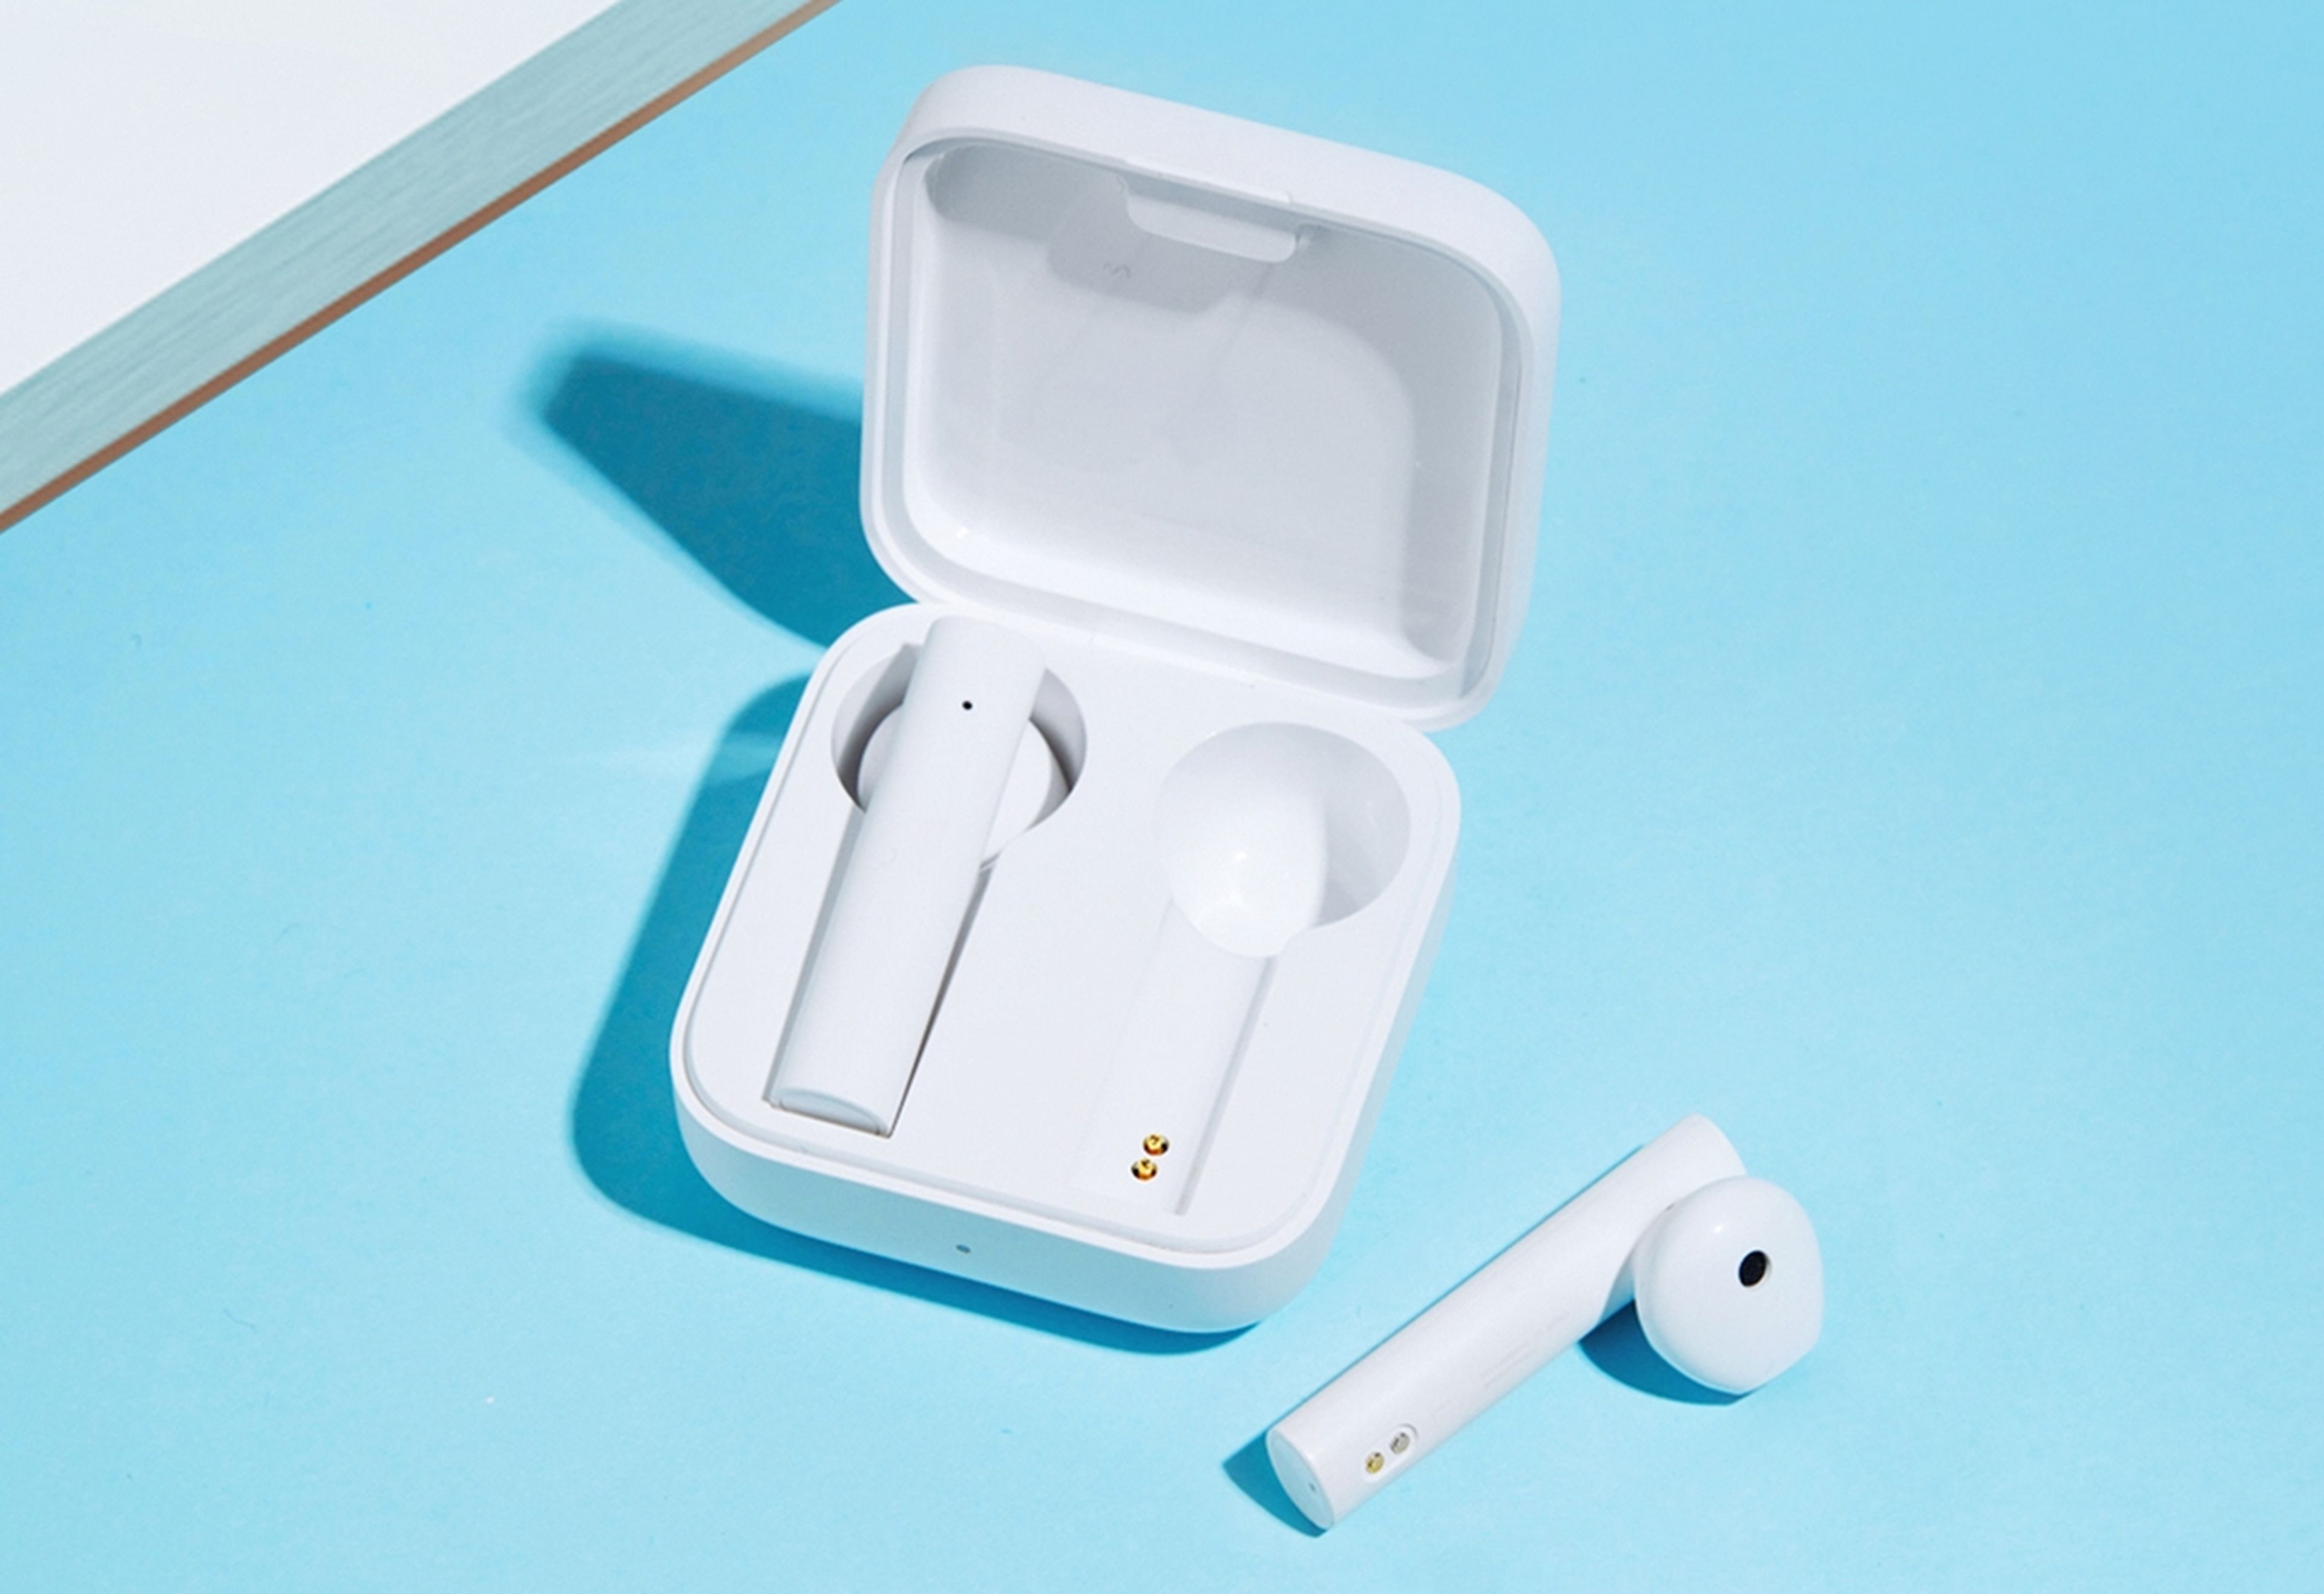 True Wireless Earphones 2 Basic, así son los nuevos auriculares baratos Xiaomi con cancelación de ruido y 20 horas de autonomía | Computer Hoy